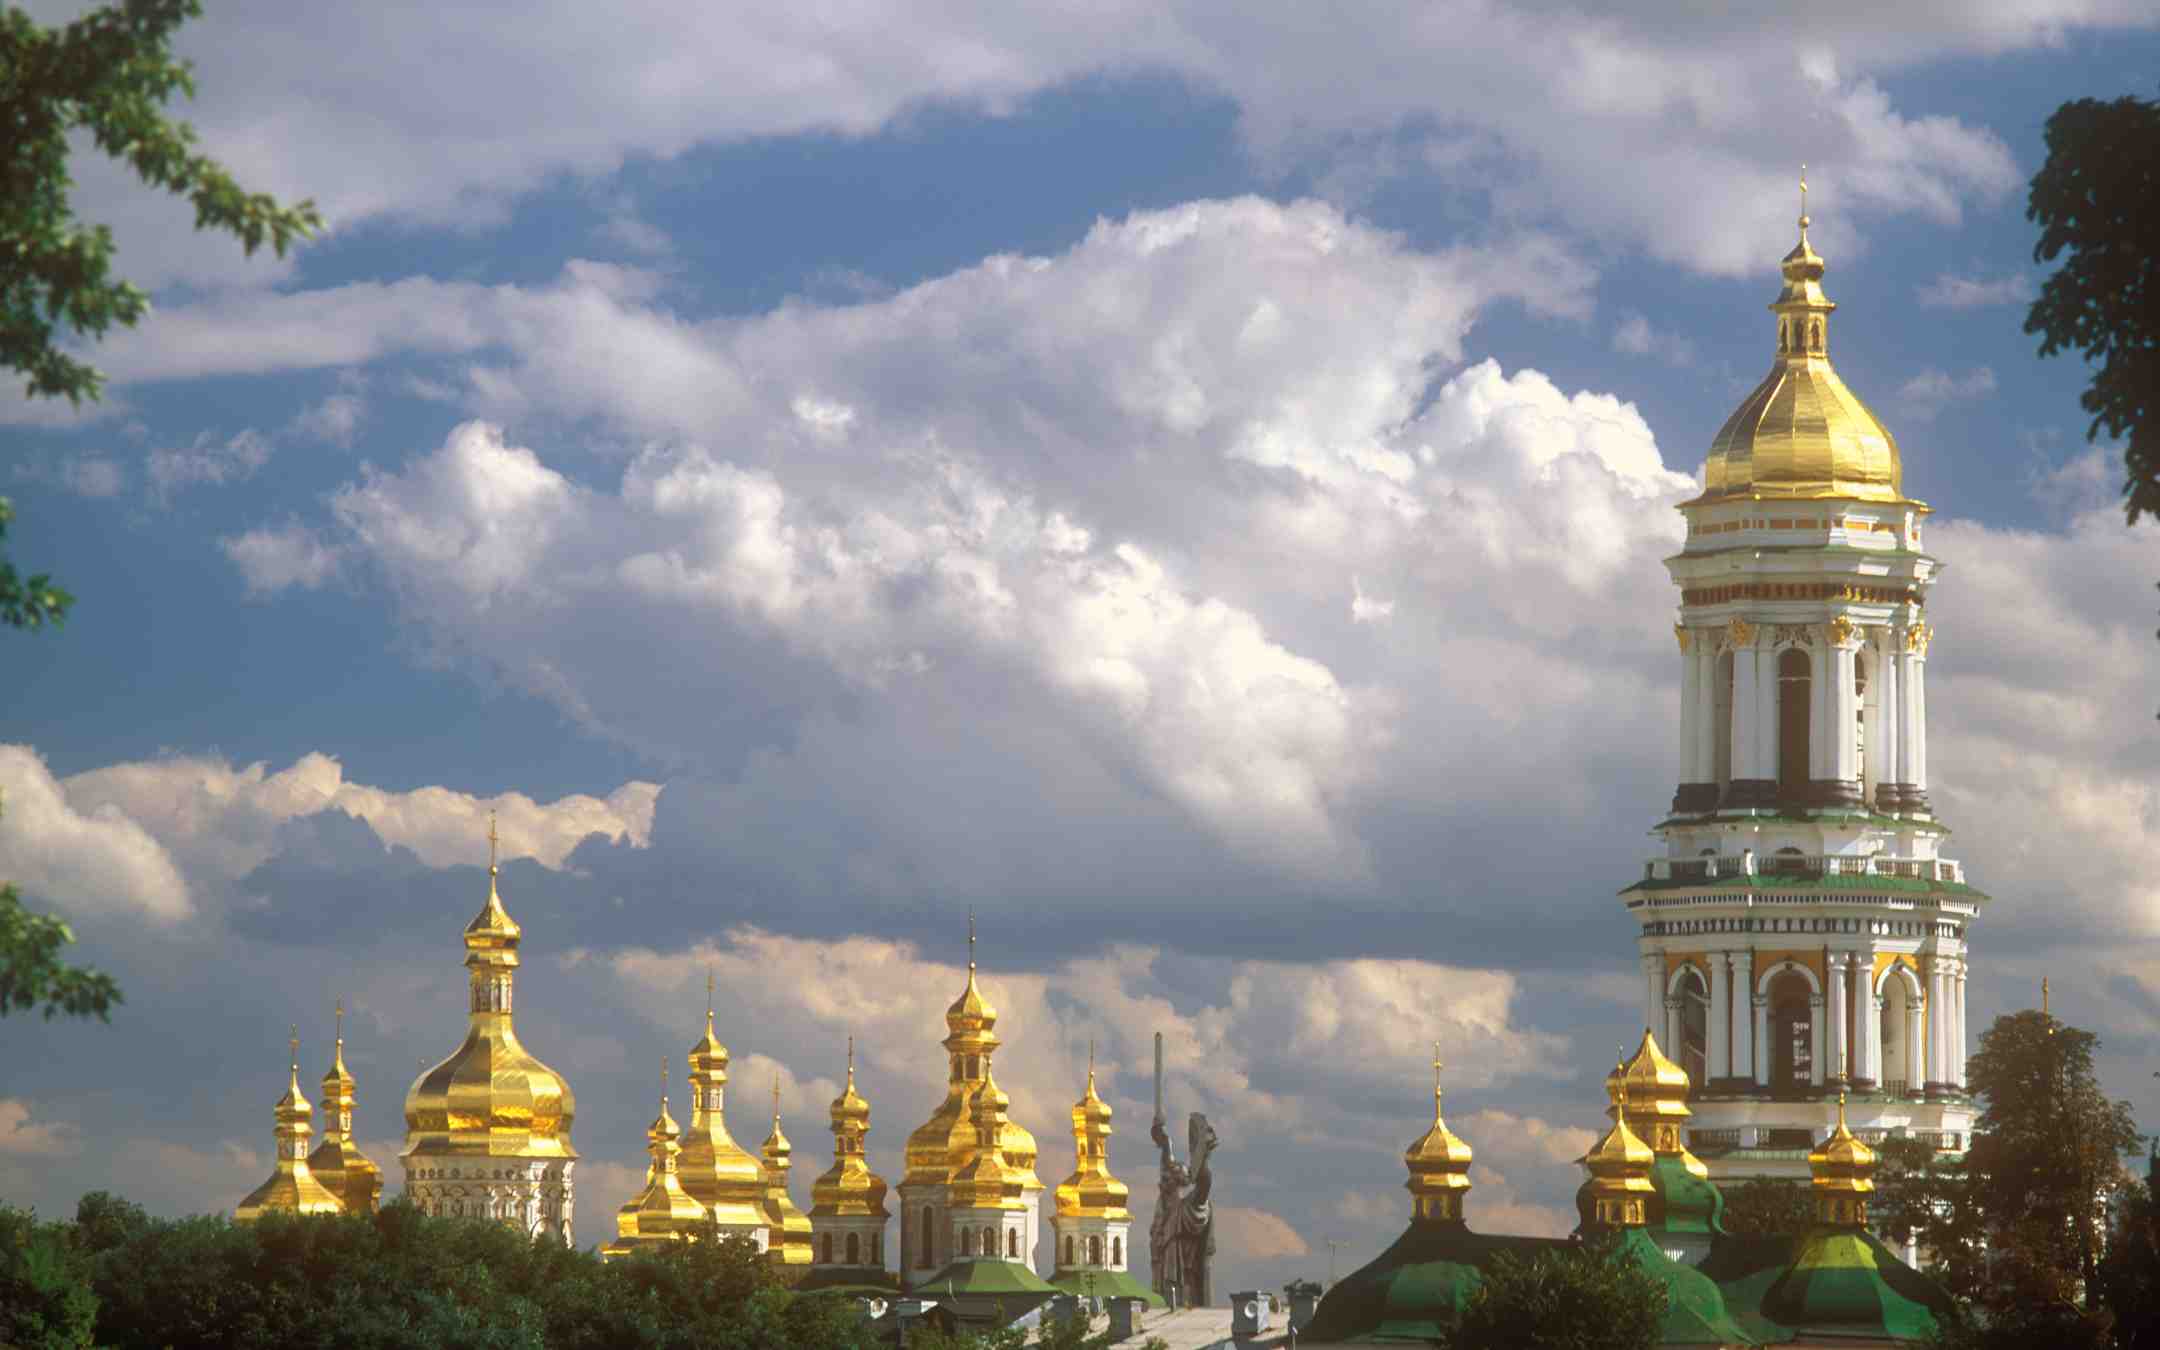 Kiovan luolaluostari kultaisine kupoleineen kuvattuna pilvipoutaisena päivänä